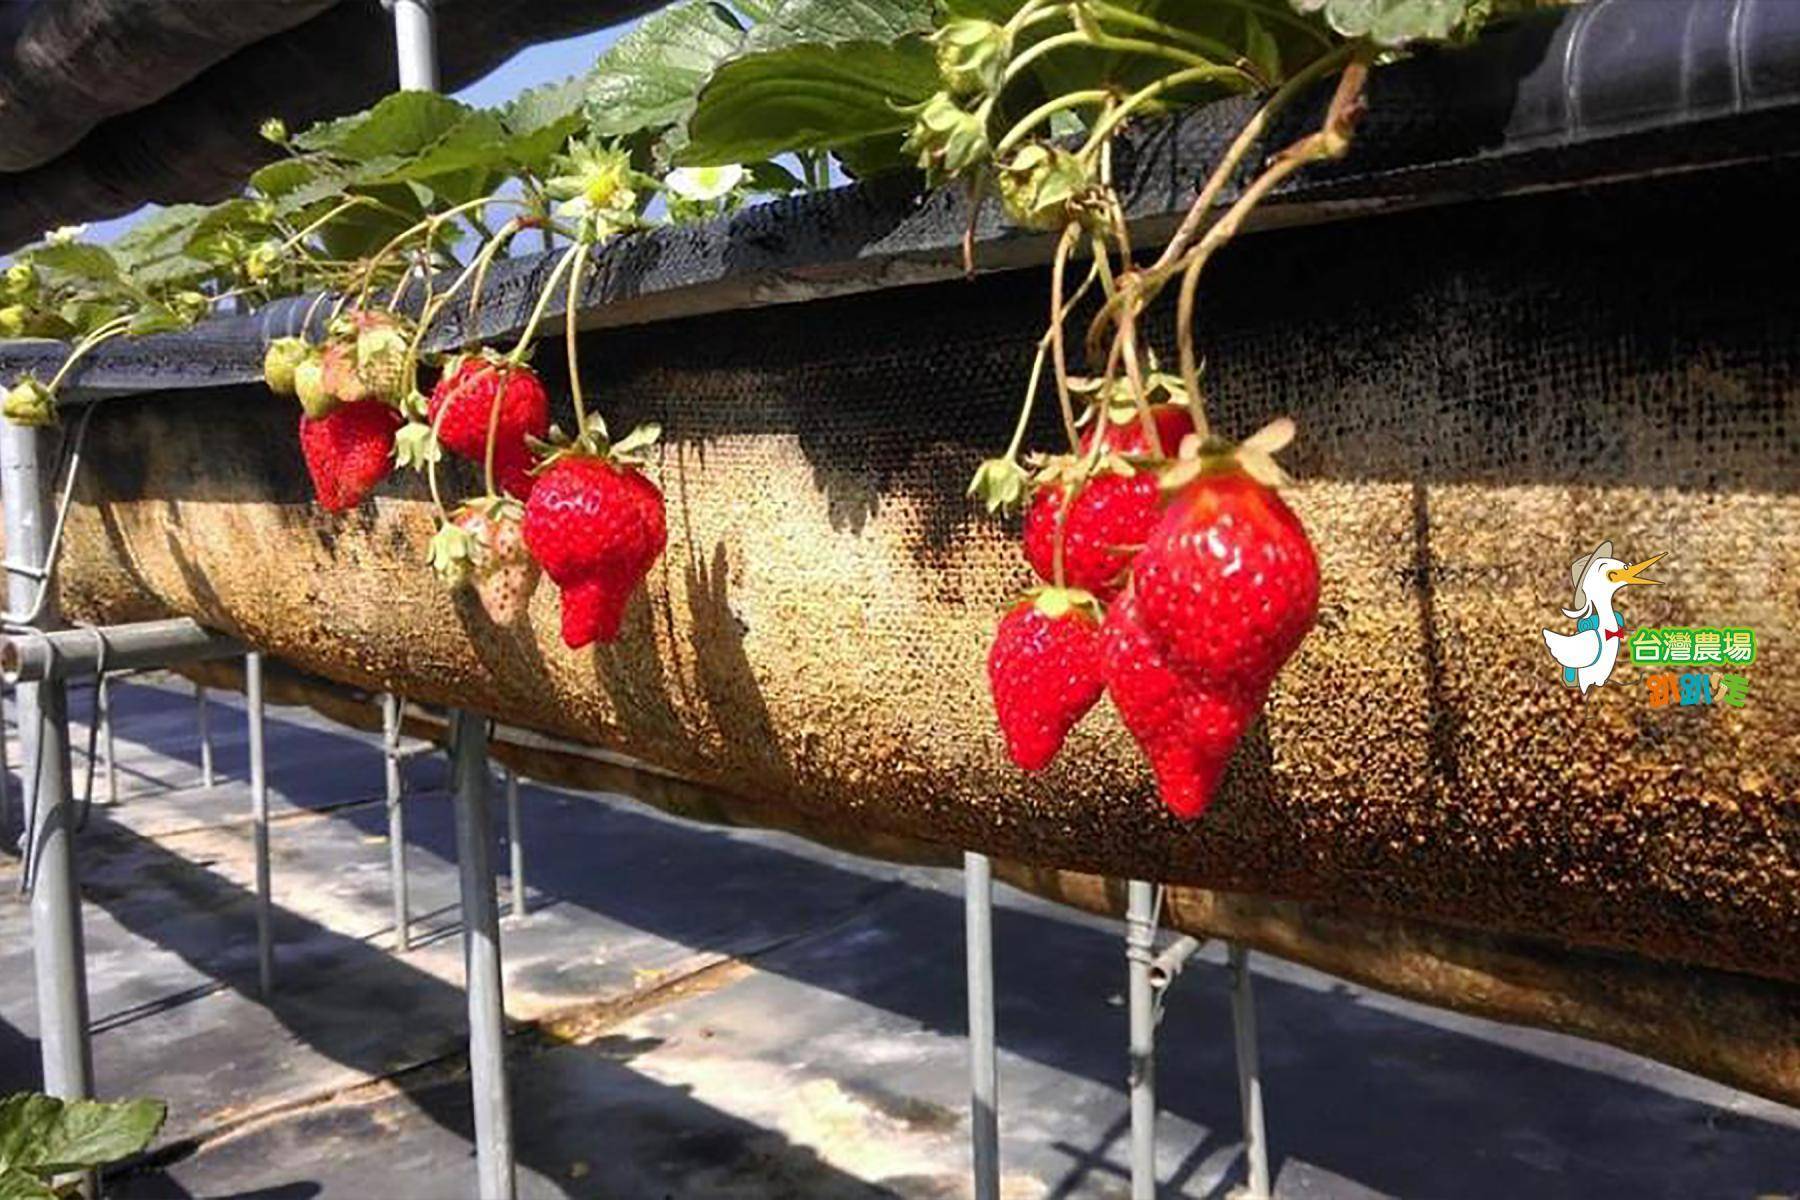 (舊)屏東-莓洋洋草莓園-採果(草莓)體驗券2